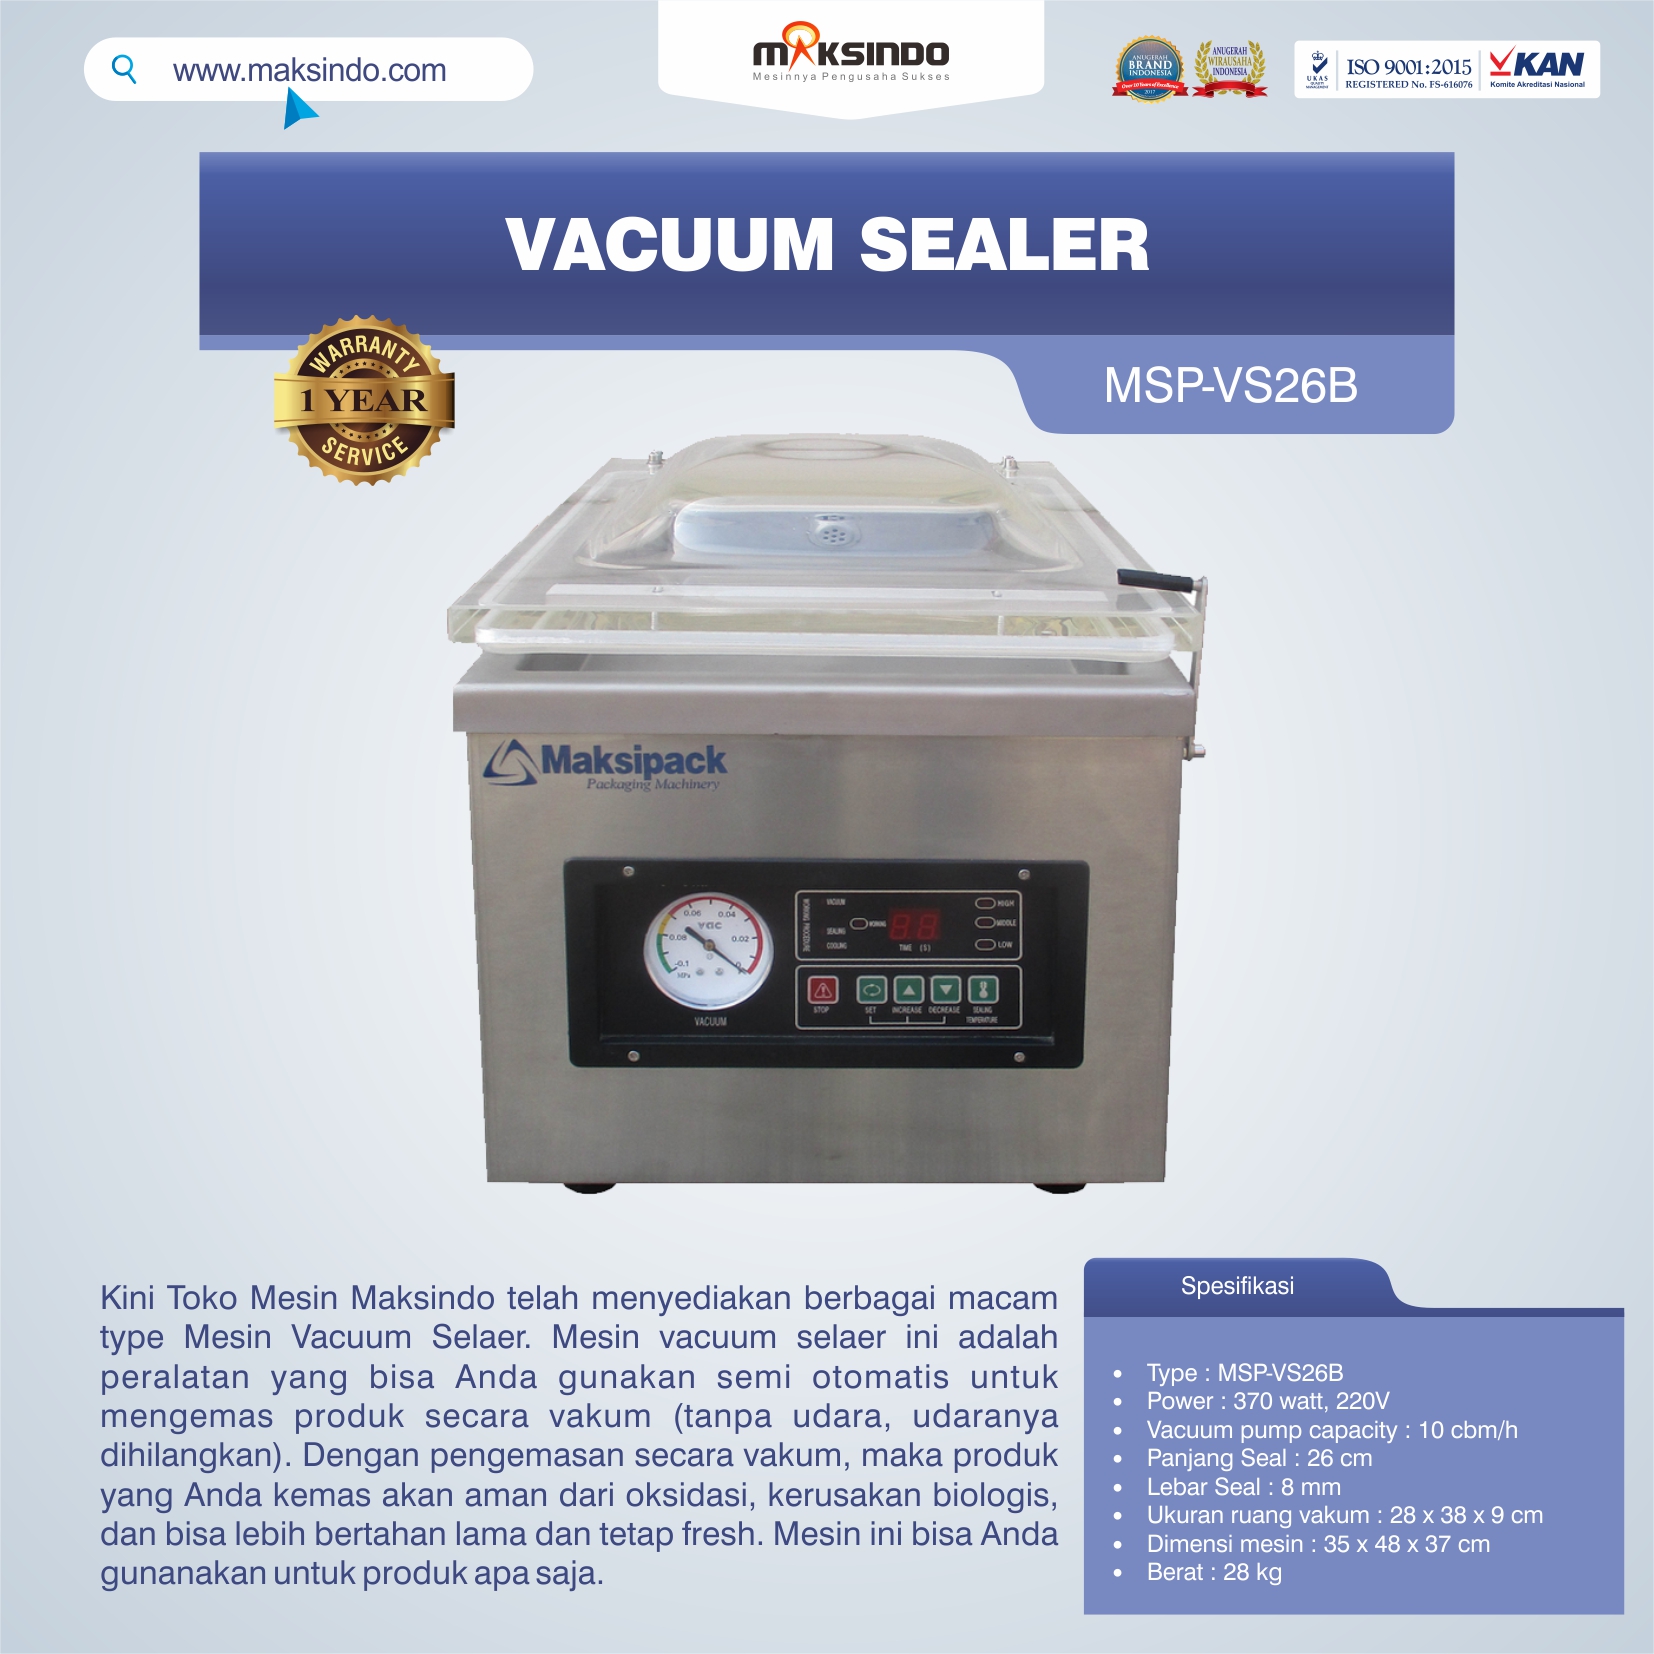 Jual Vacuum Sealer MSP-VS26B di Blitar